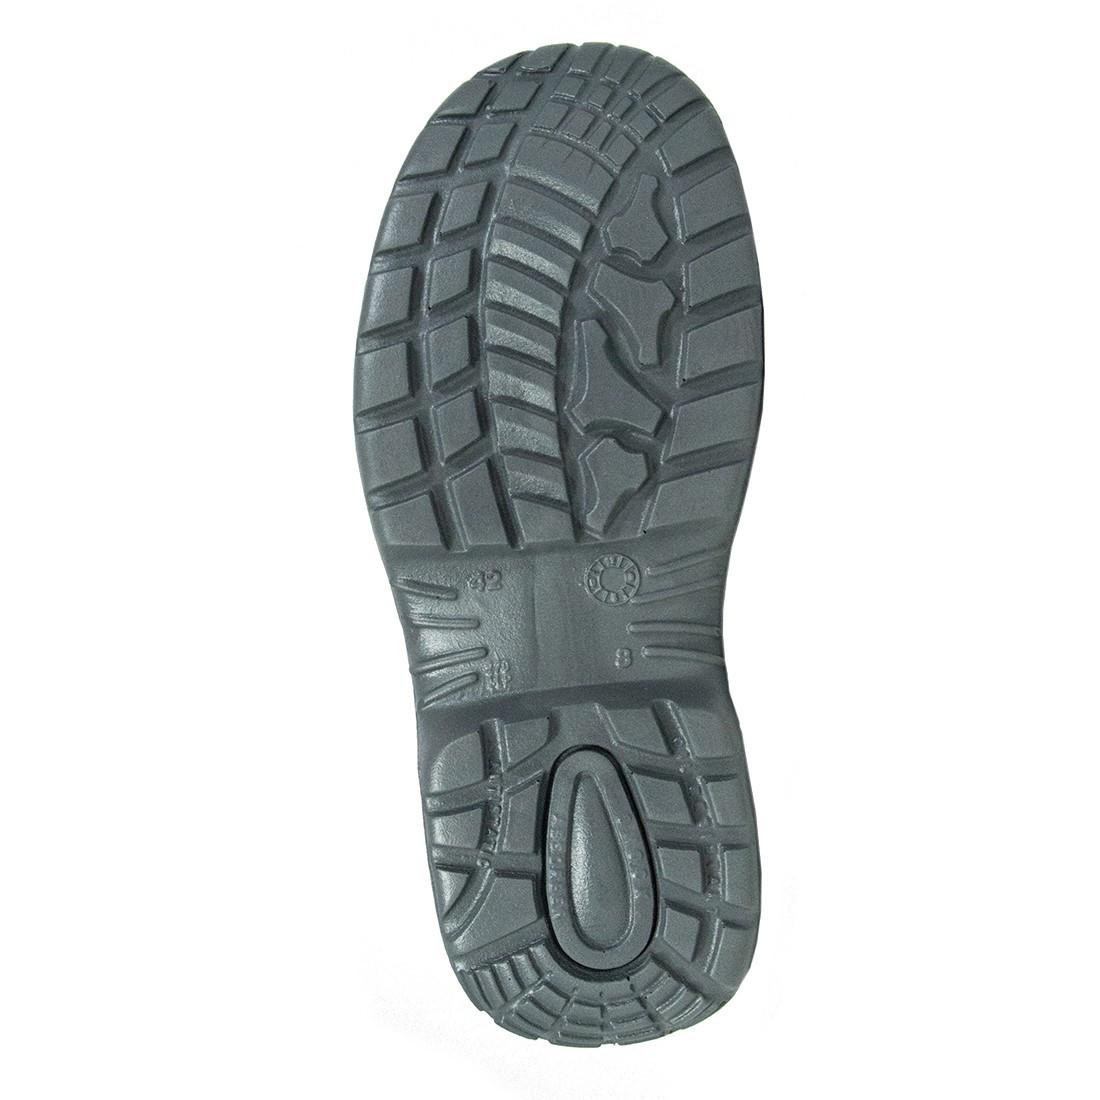 Tribeca Shoe S1 SRC - Footwear